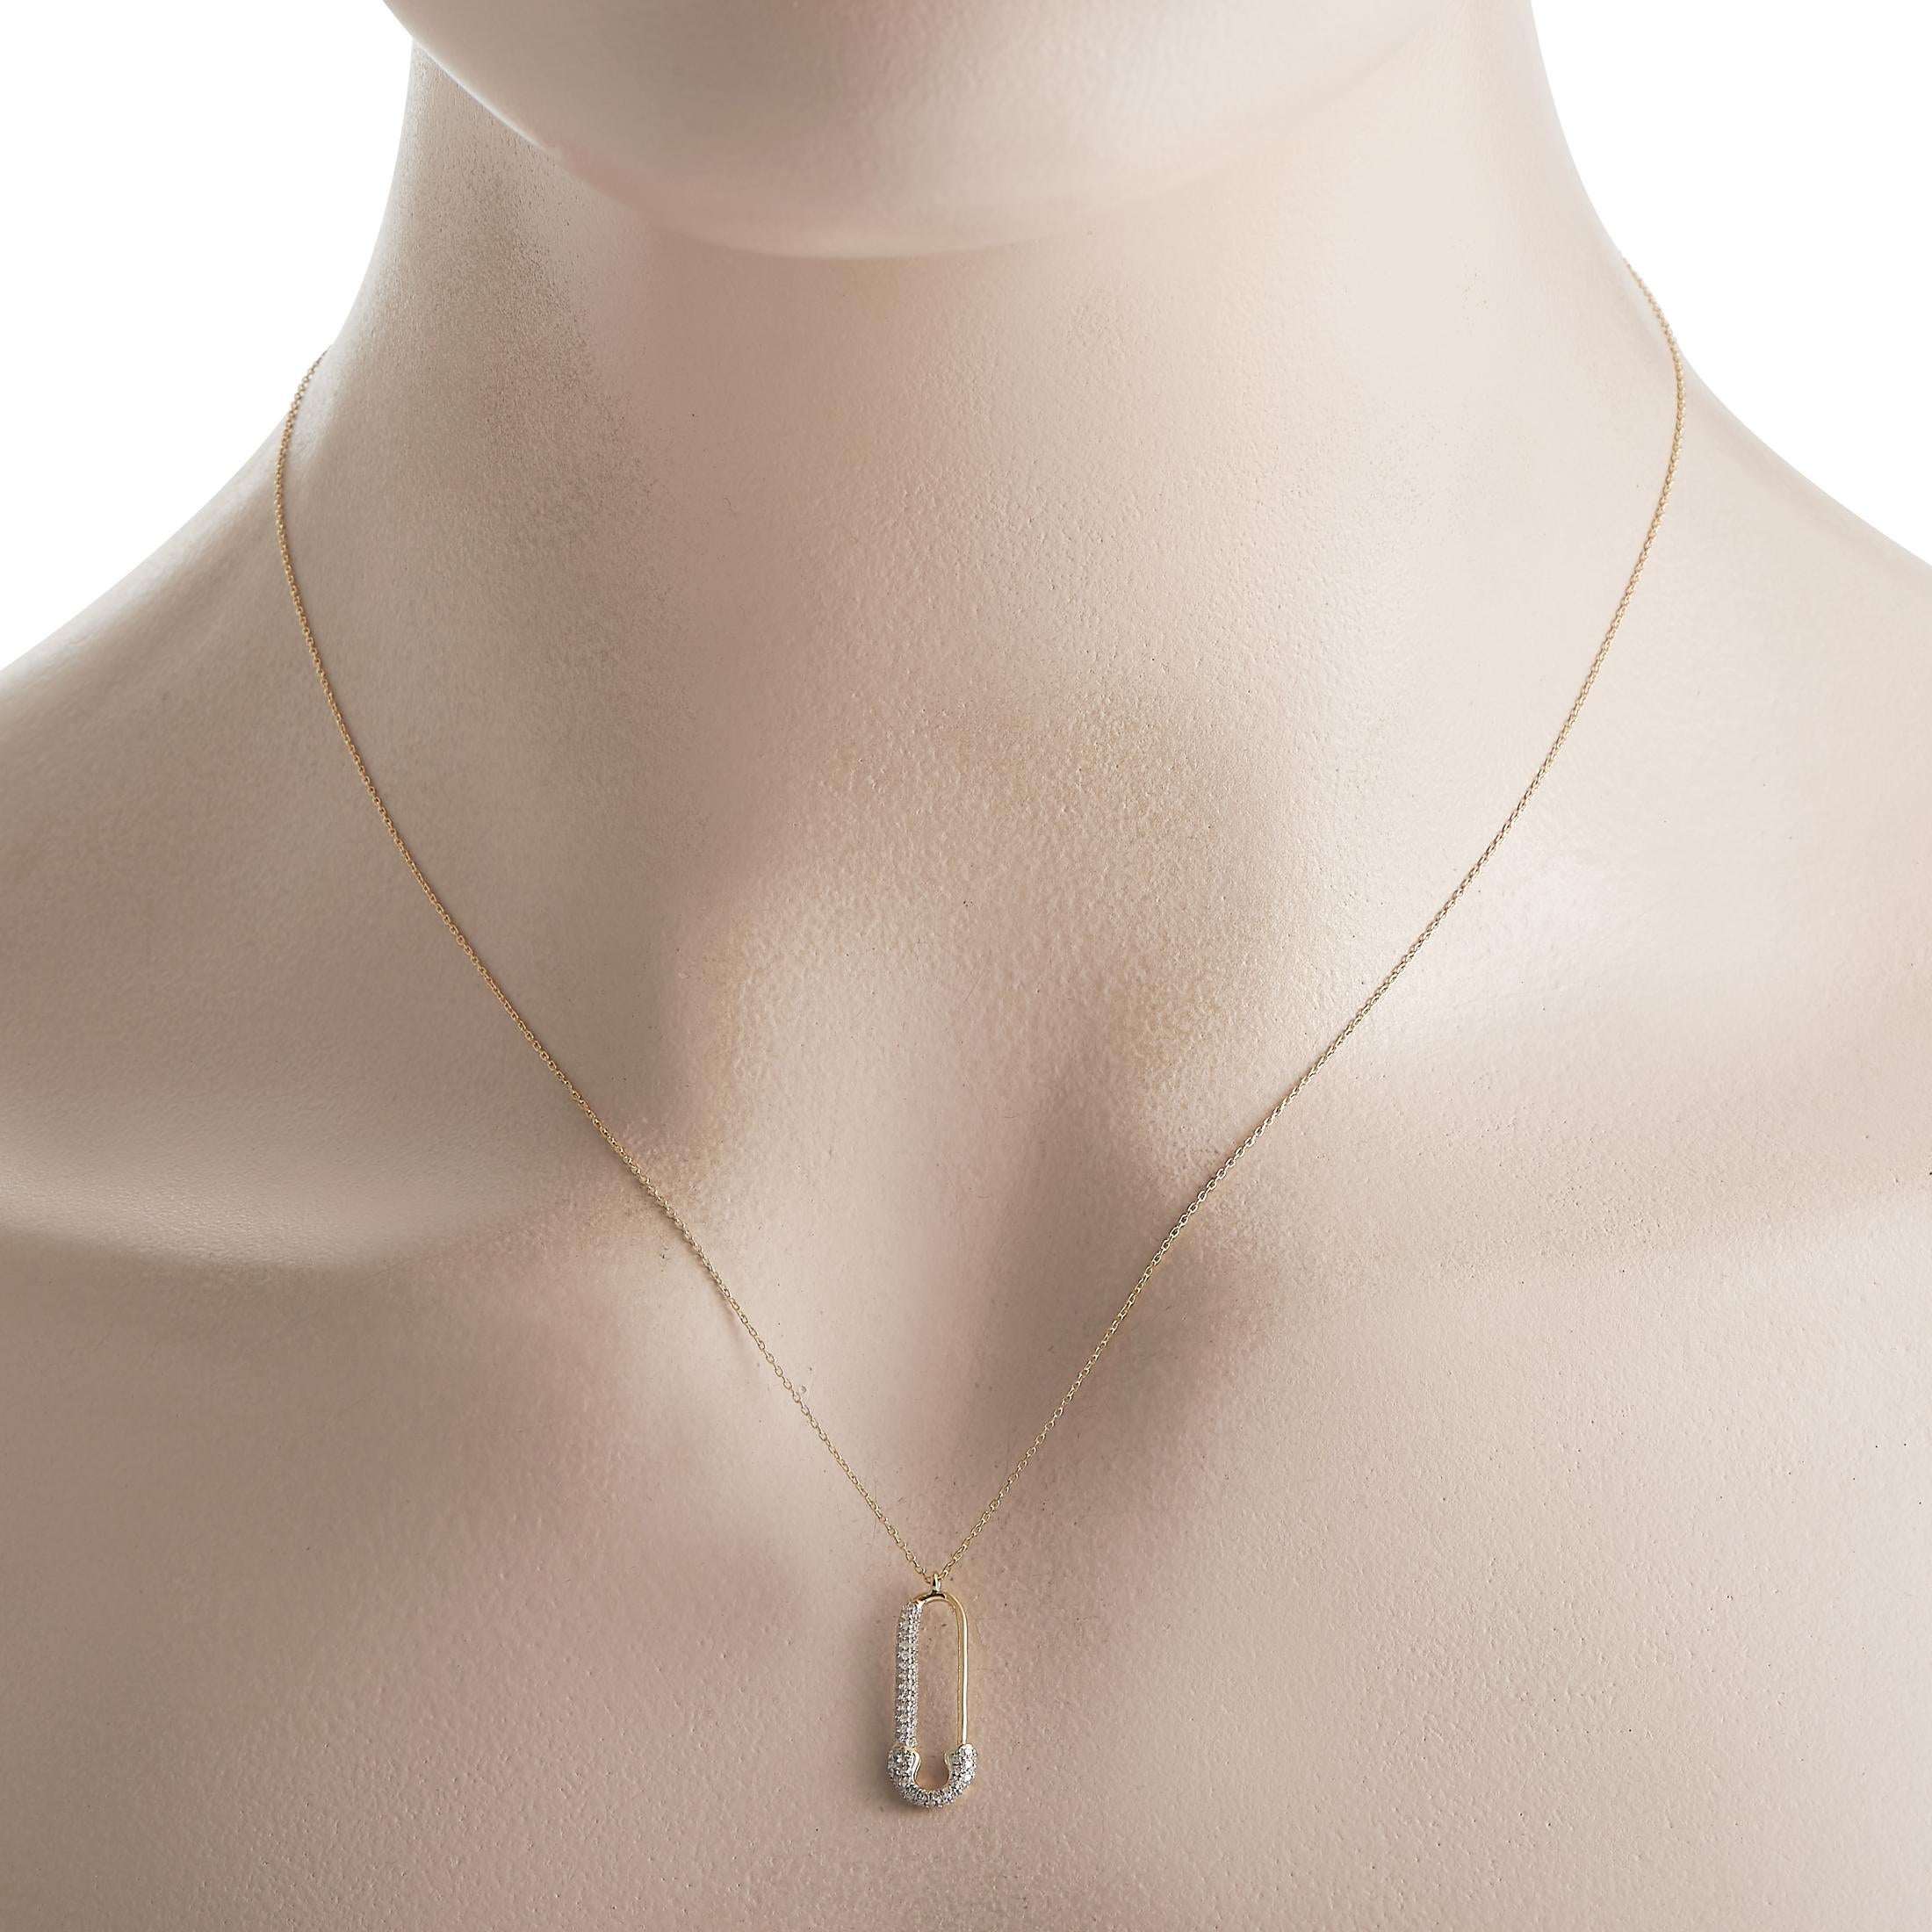 Ce luxueux collier est tout simplement inoubliable. Suspendu à une délicate chaîne de 18, vous trouverez un charmant pendentif en forme d'épingle à nourrice mesurant 0,75 de long par 0,13 de large.  Ce bijou est proposé à l'état neuf dans un coffret